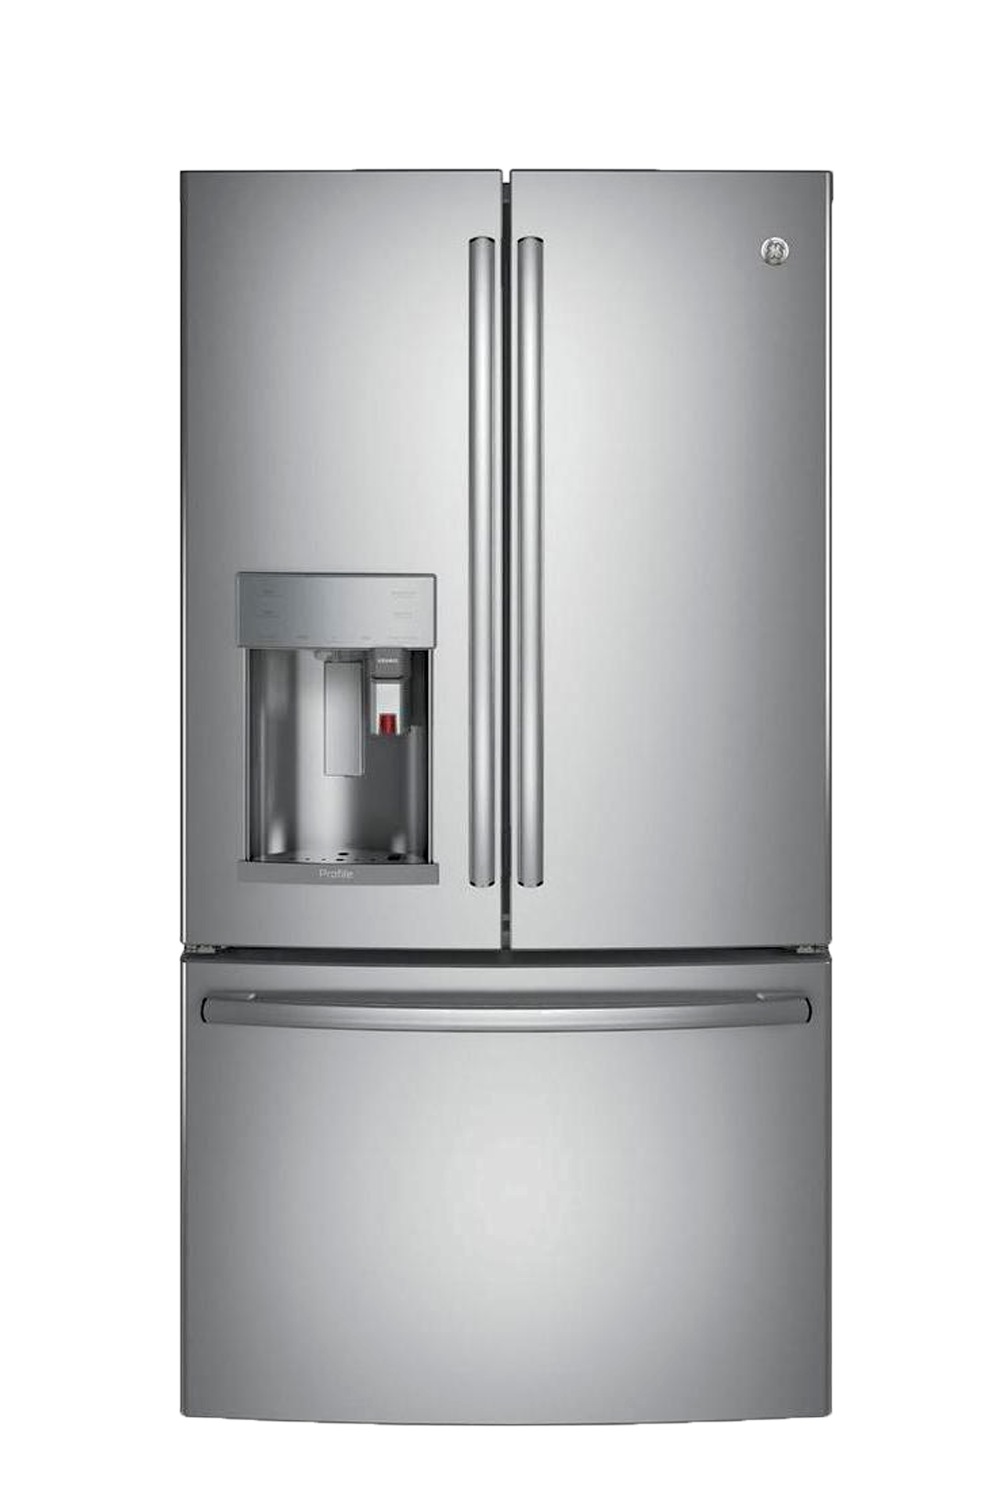 7 Best CounterDepth Refrigerators, According to Kitchen Appliance